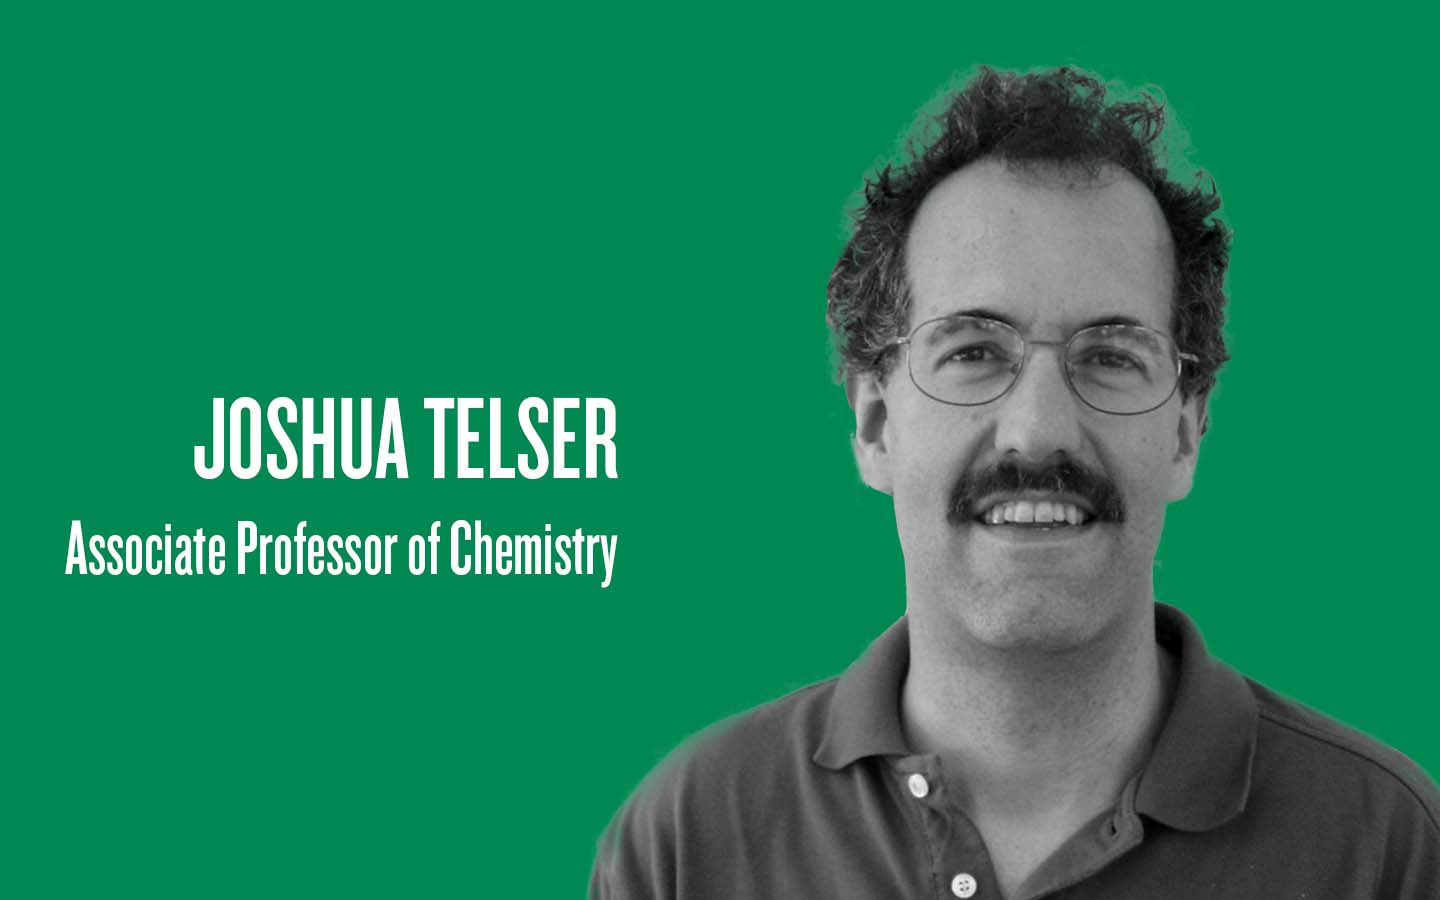 Joshua Telser, associate professor of chemistry